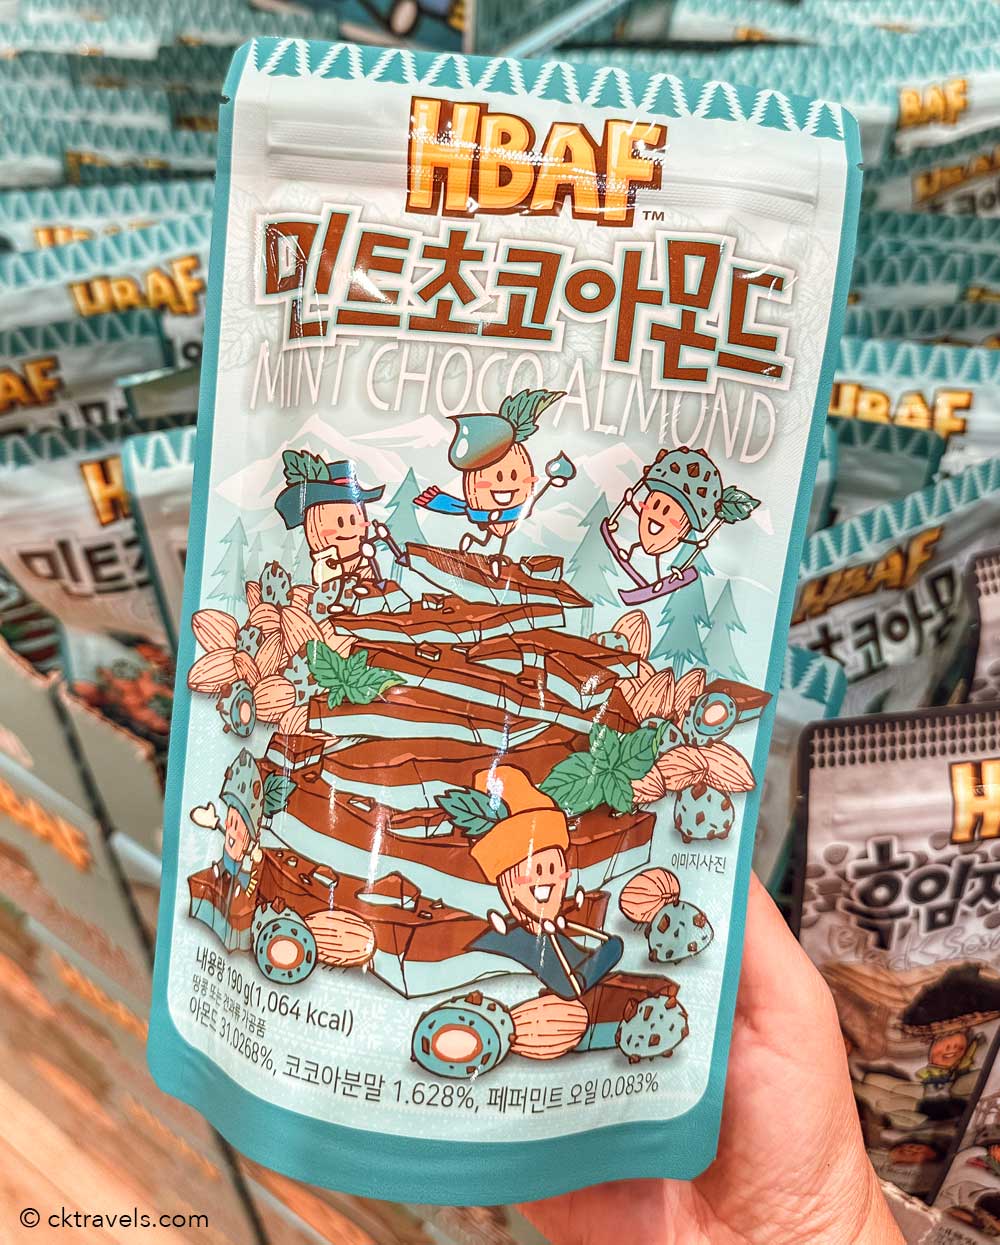 HBAF Mint Chocolate Almonds south korea